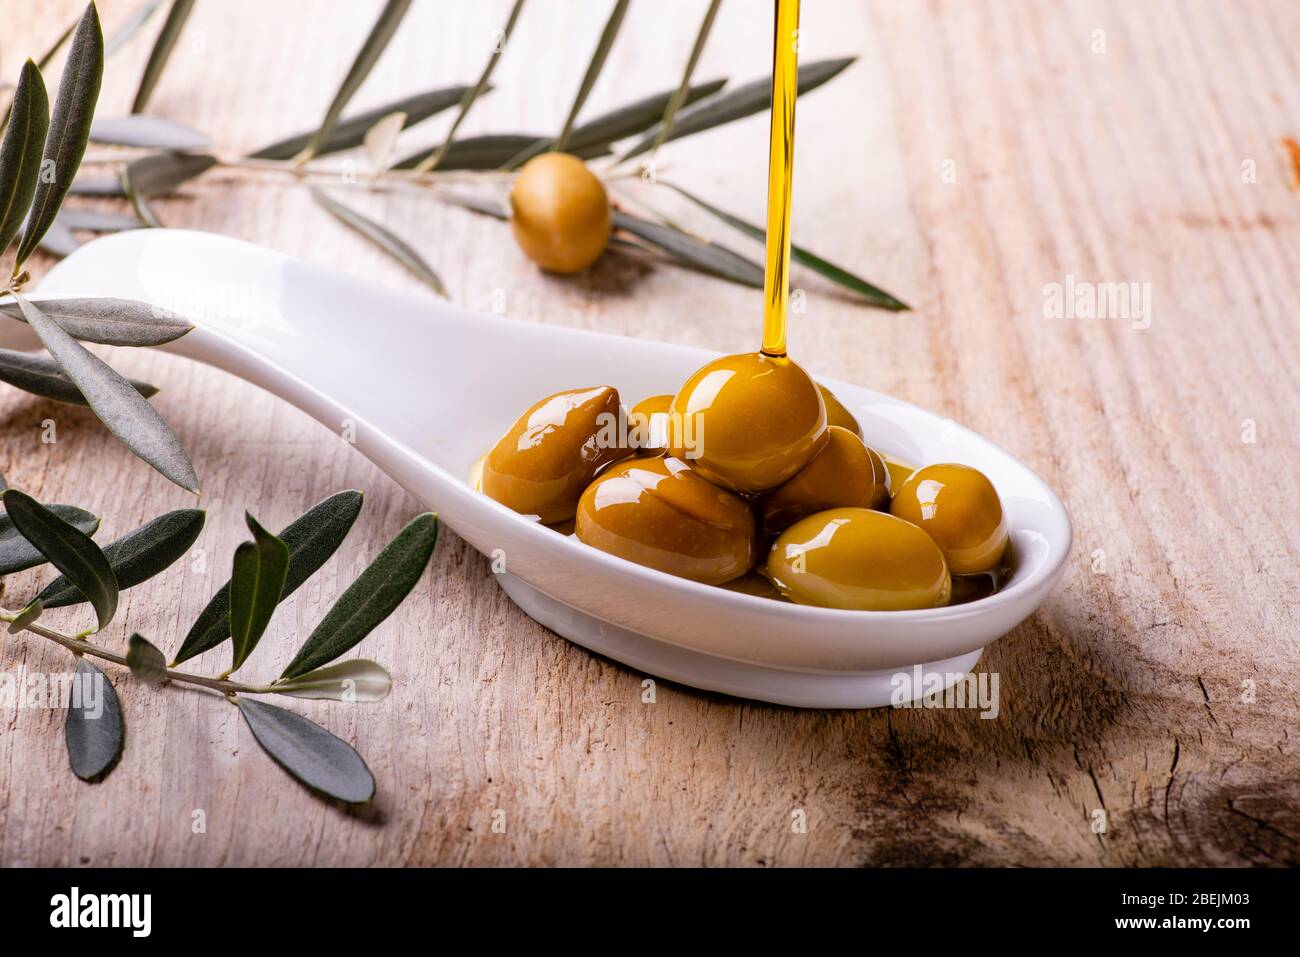 L'huile d'olive extra vierge s'écoule dans le bol en céramique rempli d'olives vertes sur la table en bois rustique Banque D'Images